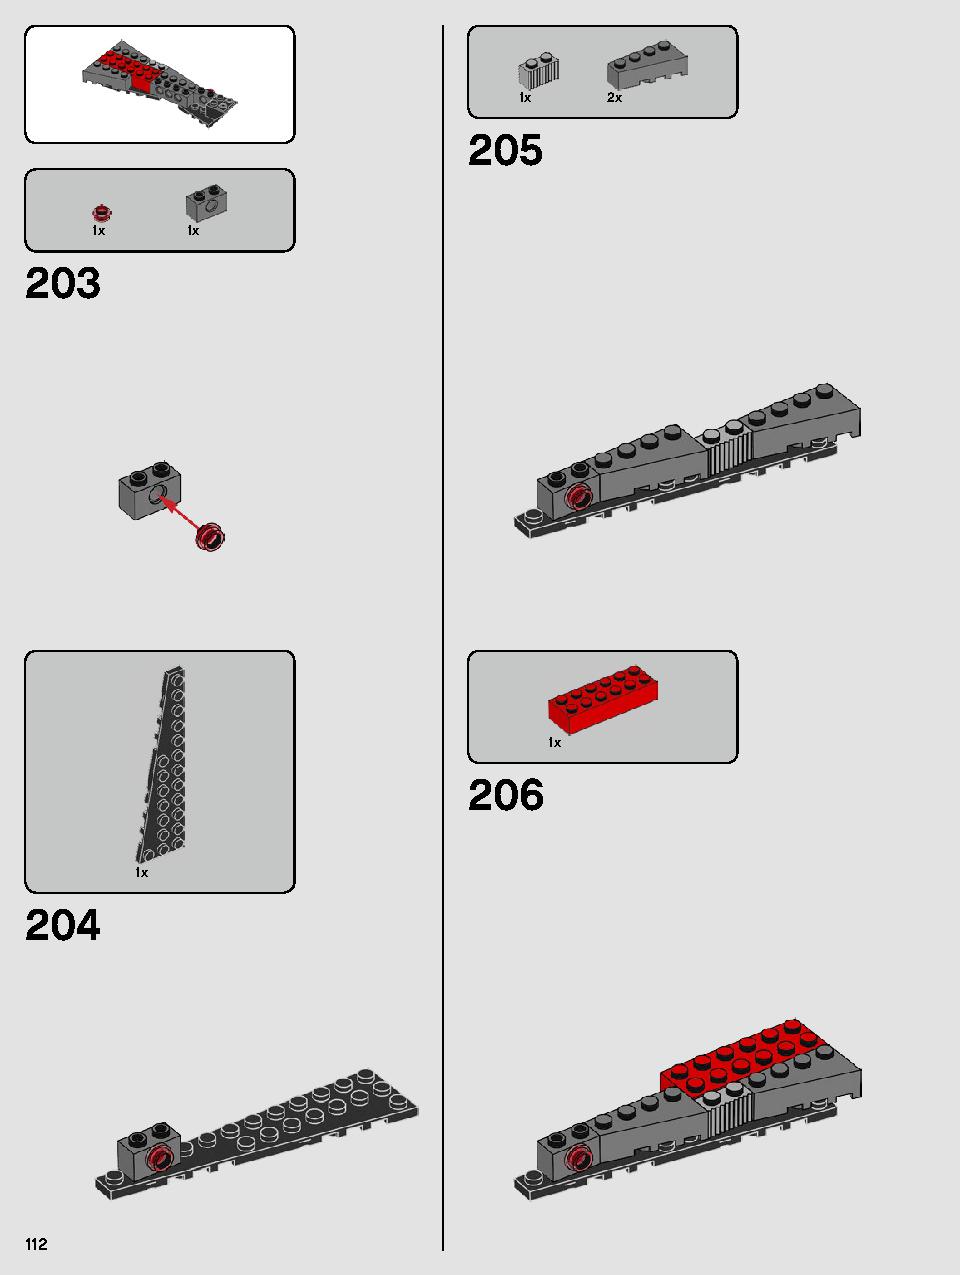 스타워즈 카일로 렌의 셔틀™ 75256 레고 세트 제품정보 레고 조립설명서 112 page